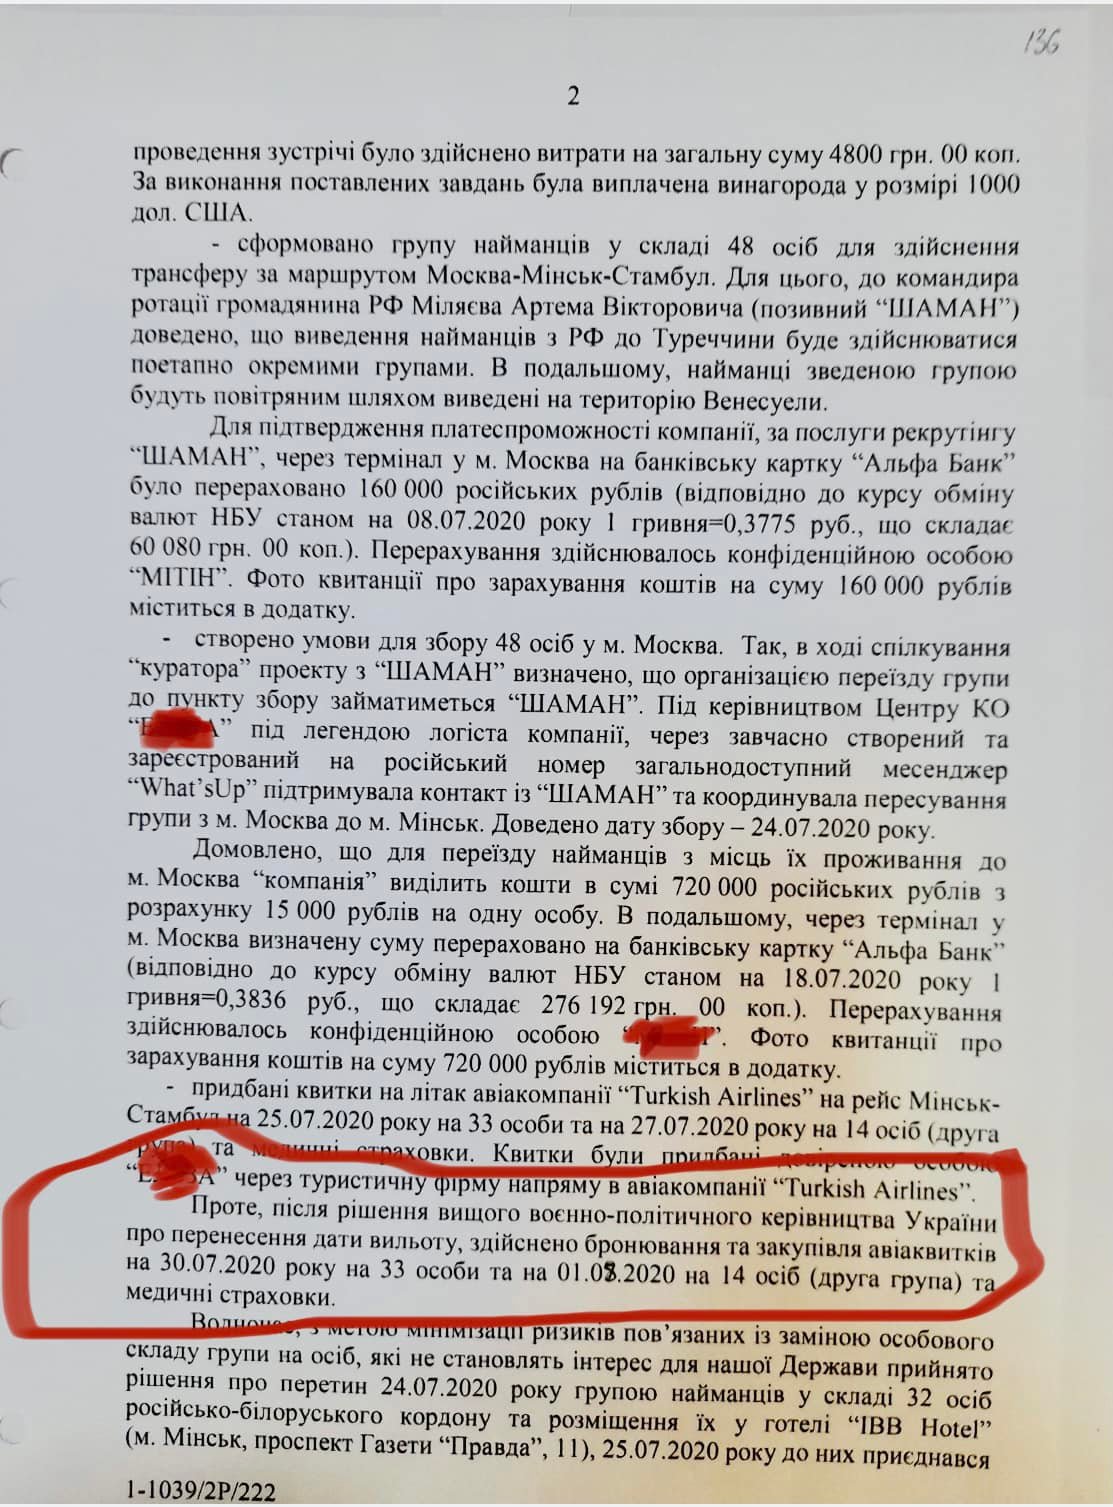 журналістка Яніна Соколова оприлюднила документи пов'язані з проведенням спецоперації ГУР МОУ